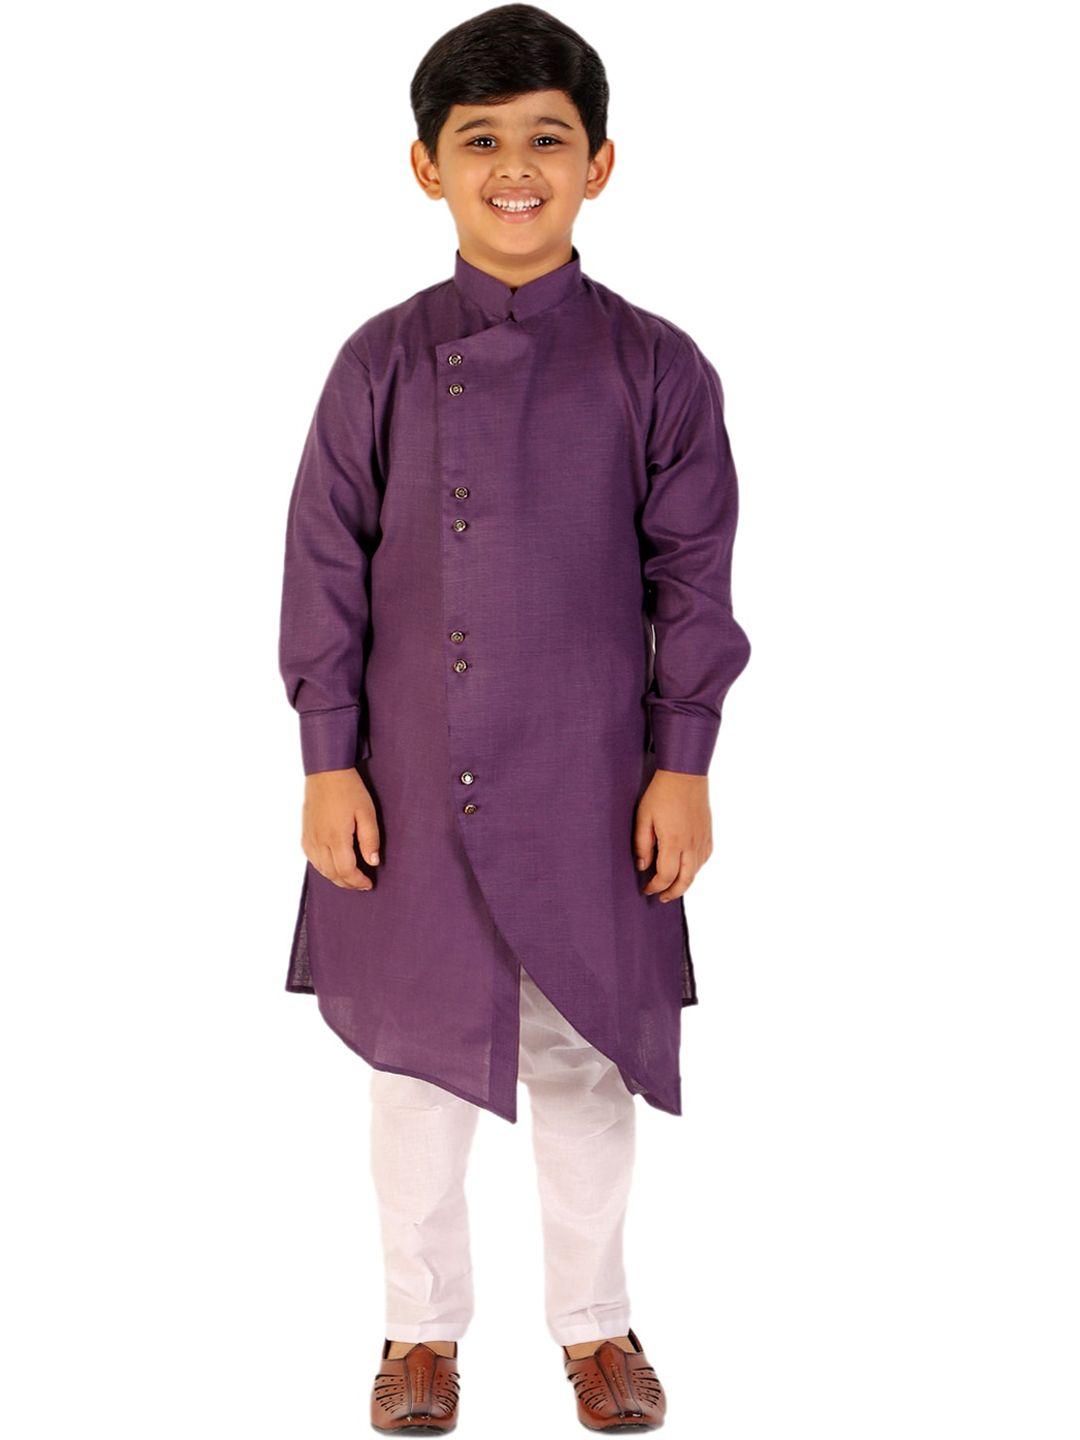 pro-ethic-style-developer-boys-purple-&-white-solid-jacquard-clothing-set